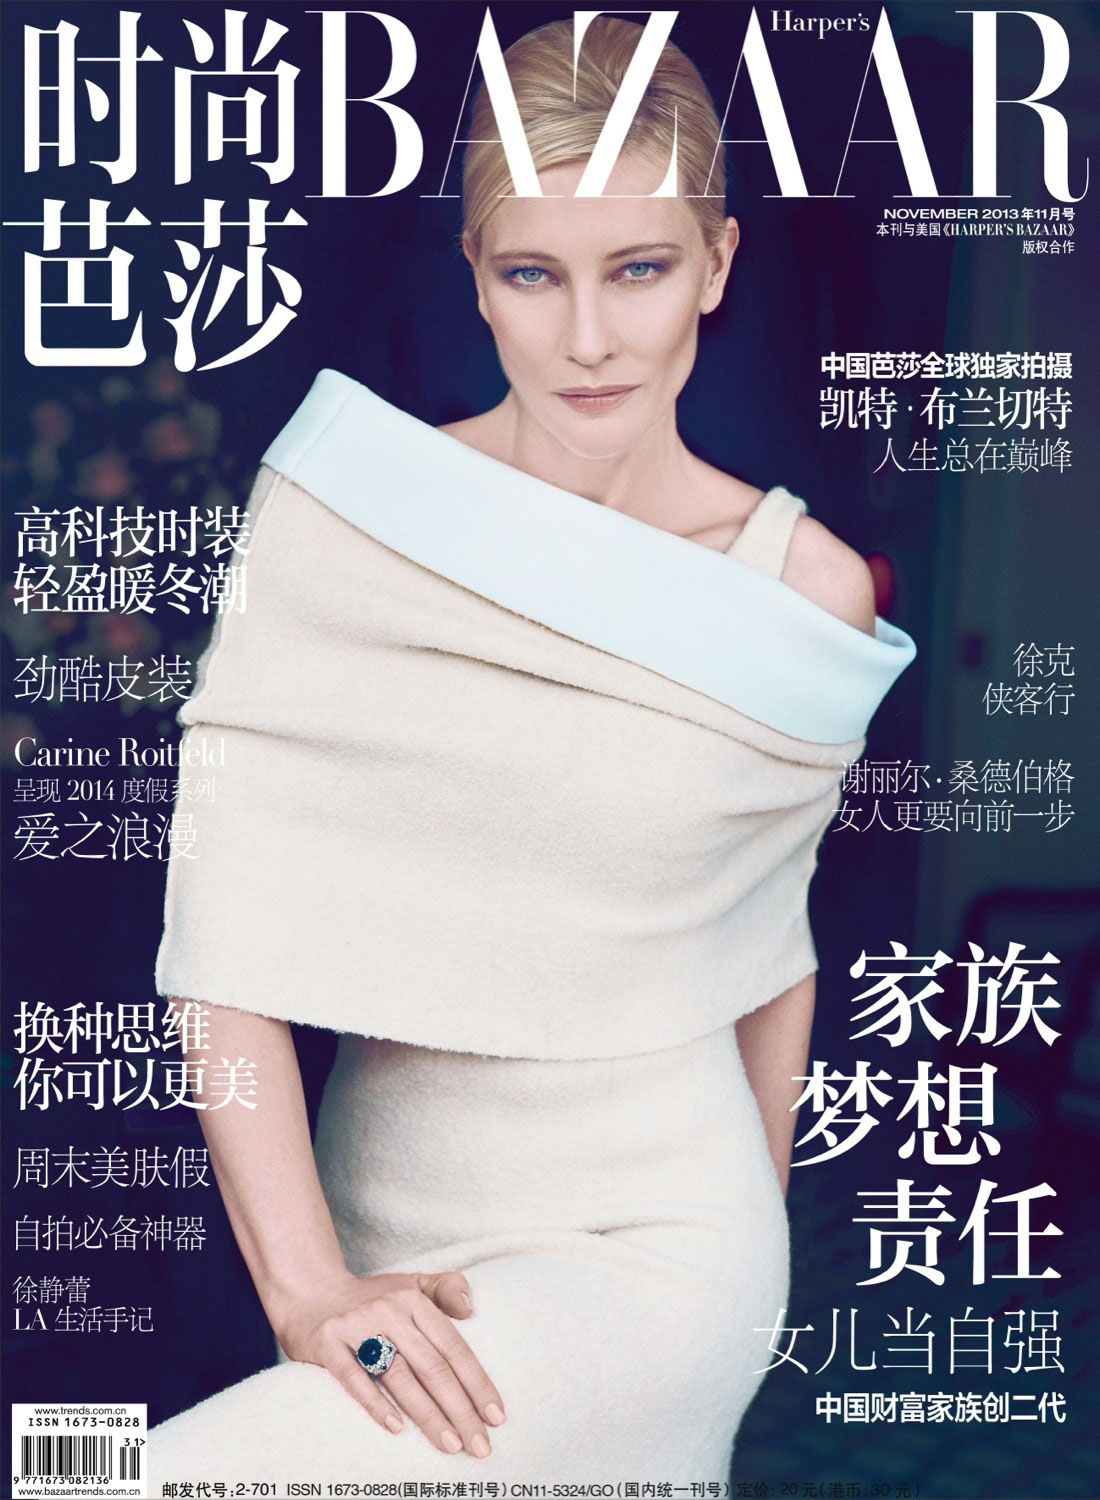 Harpers Bazaar china Cate Blanchett editorial retouching ferhat yurdam